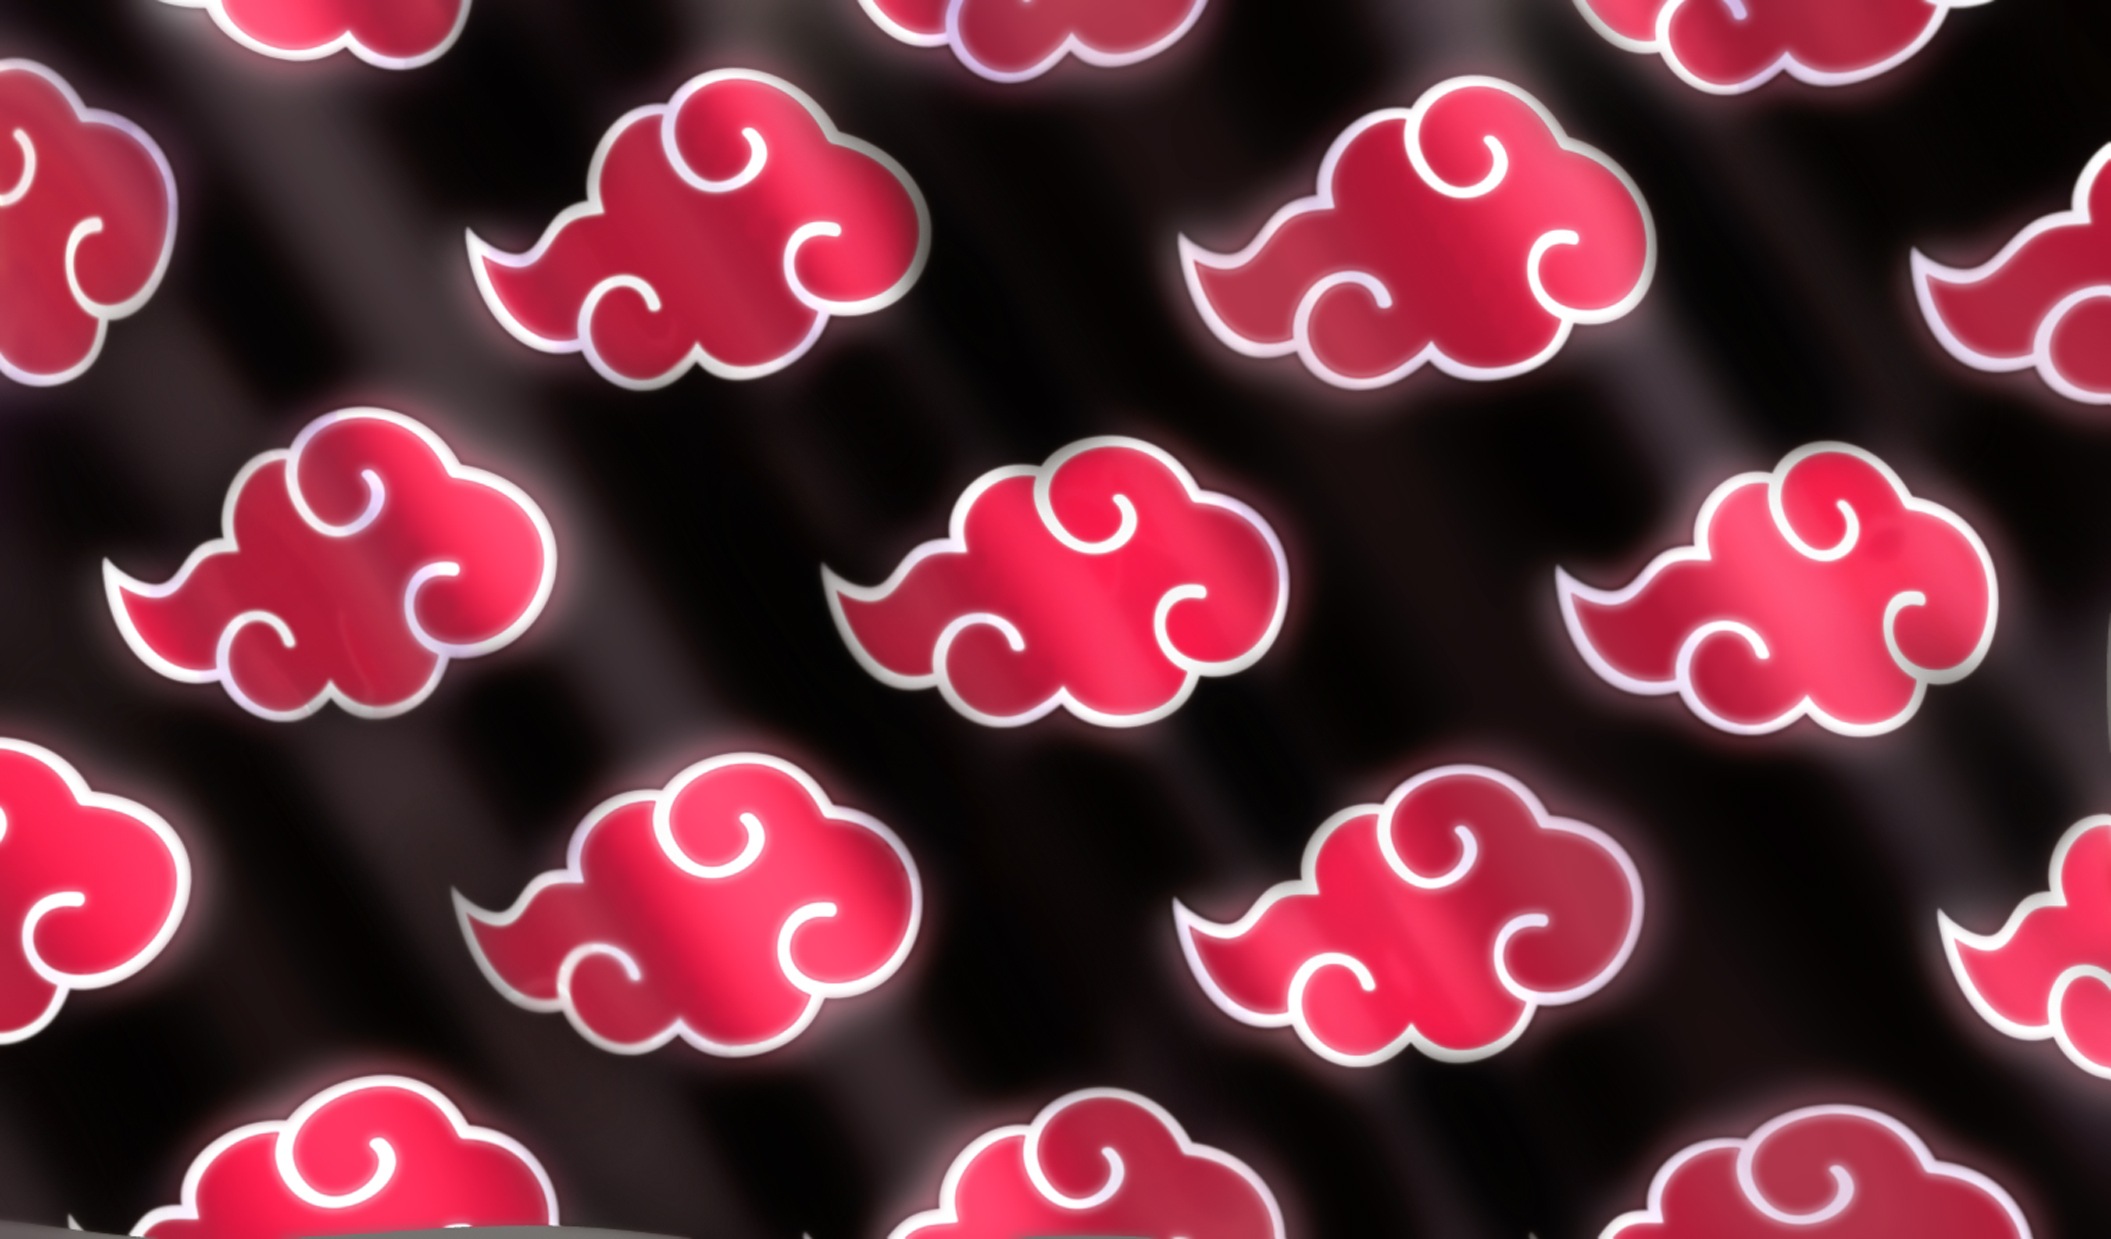 akatsuki logo wallpaper,pink,icing,heart,pattern,royal icing